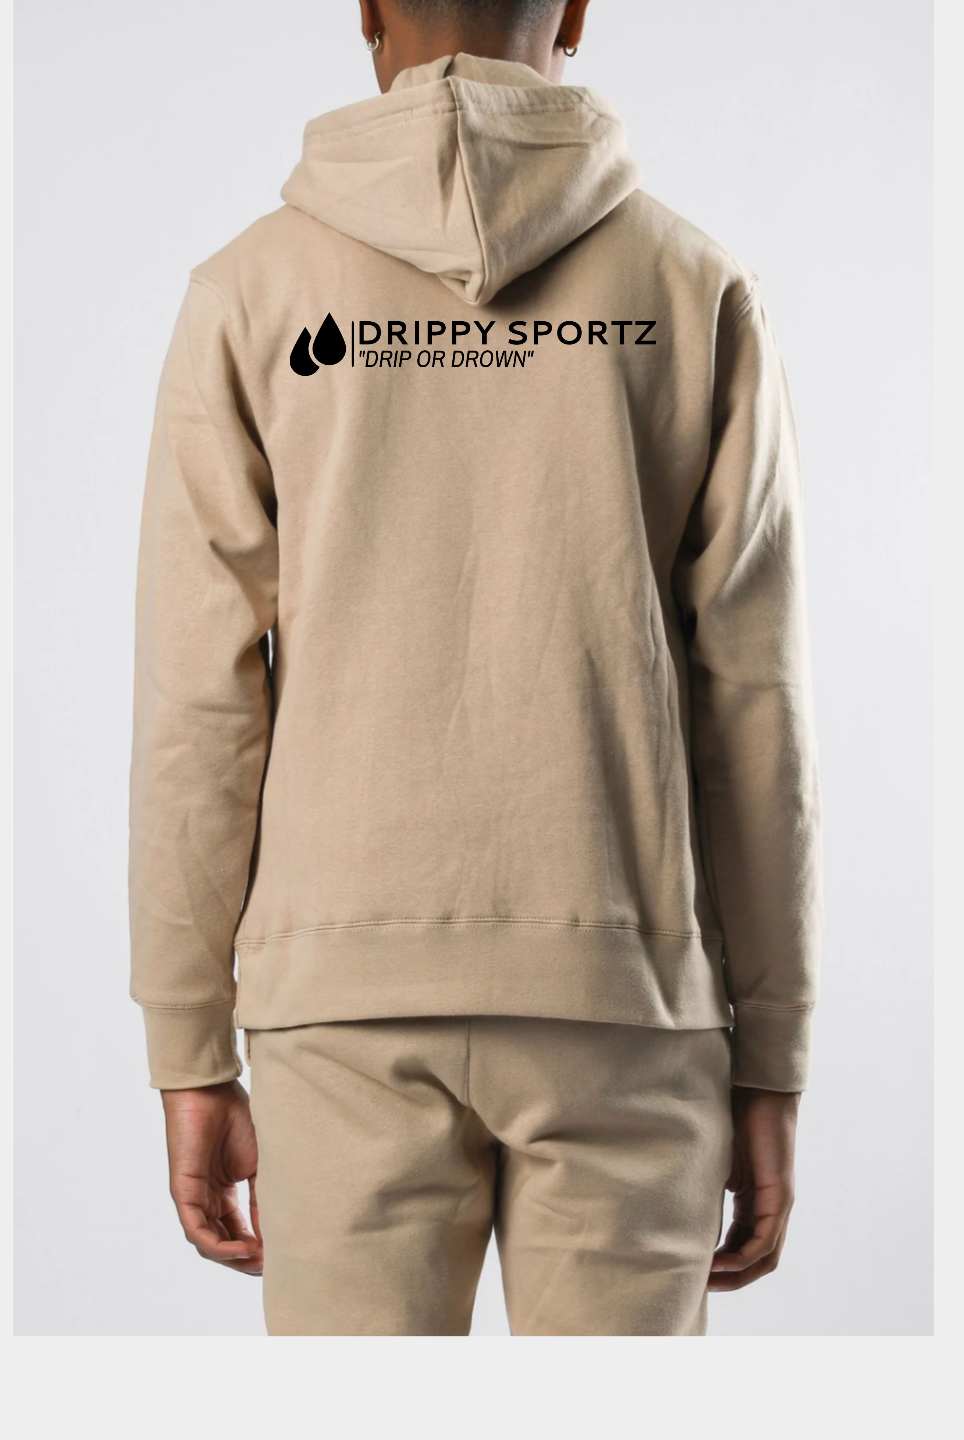 Drippy Sportz Fleece Hoodies